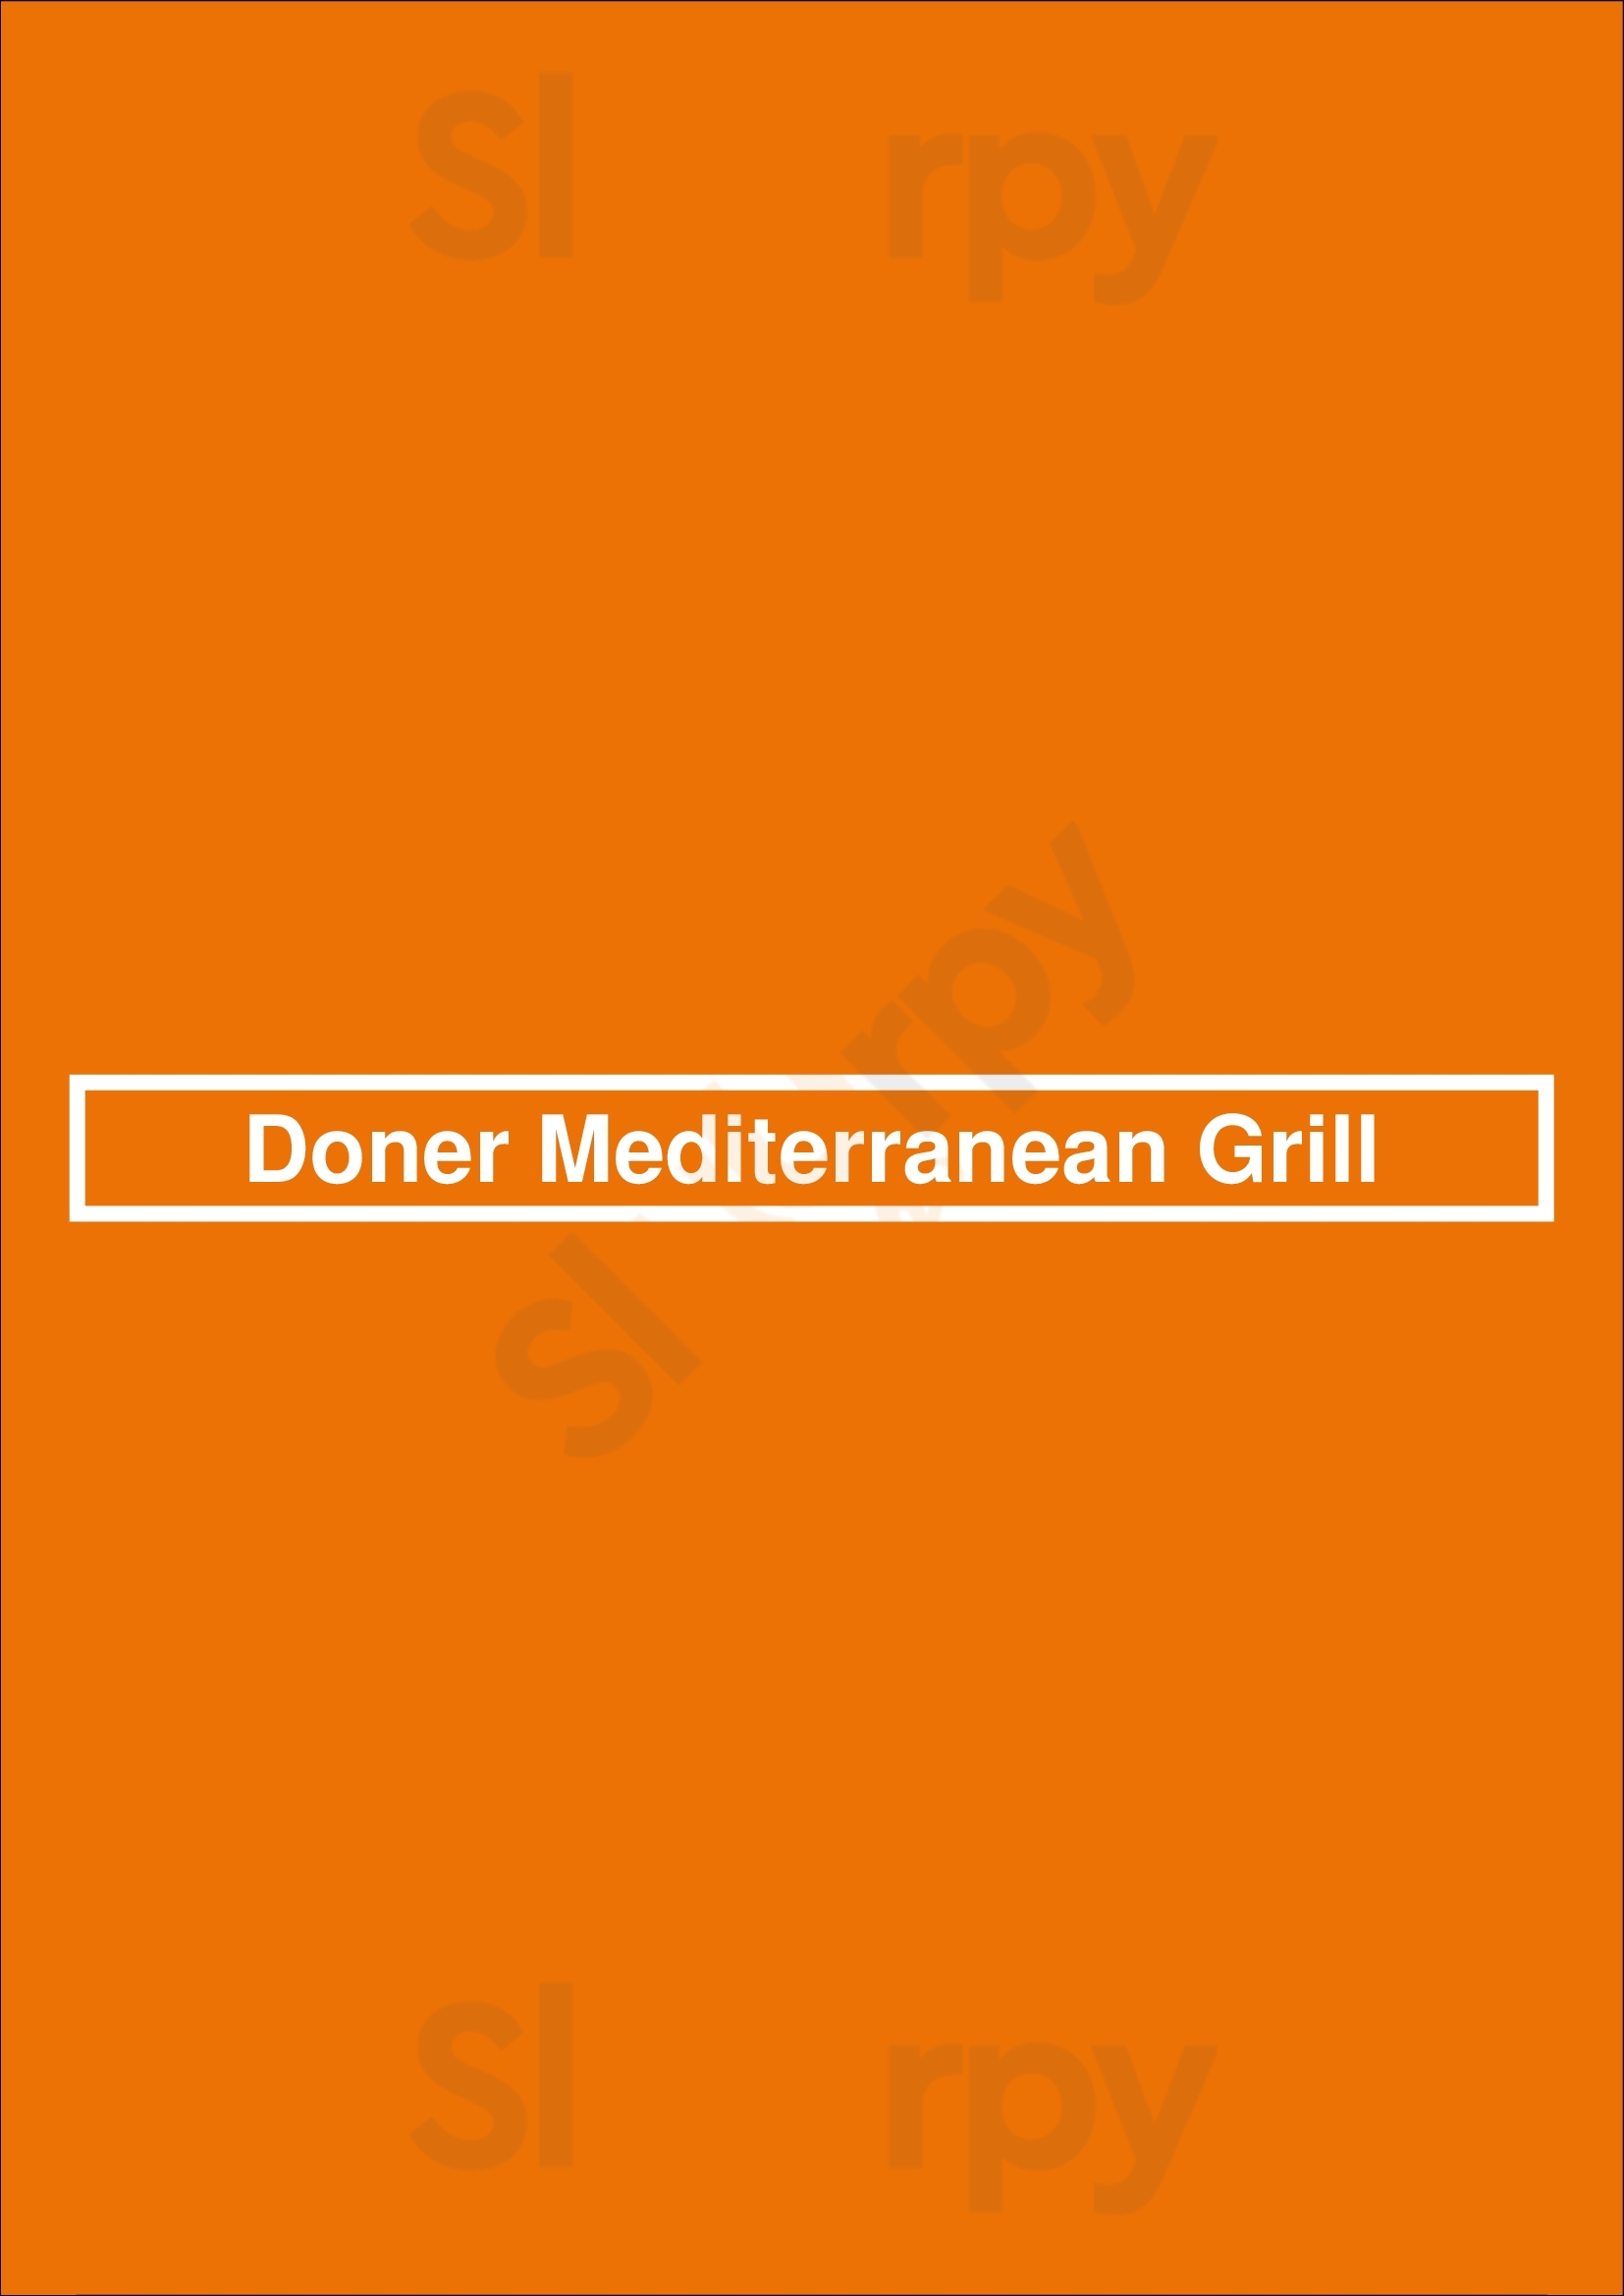 Doner Mediterranean Grill San Diego Menu - 1